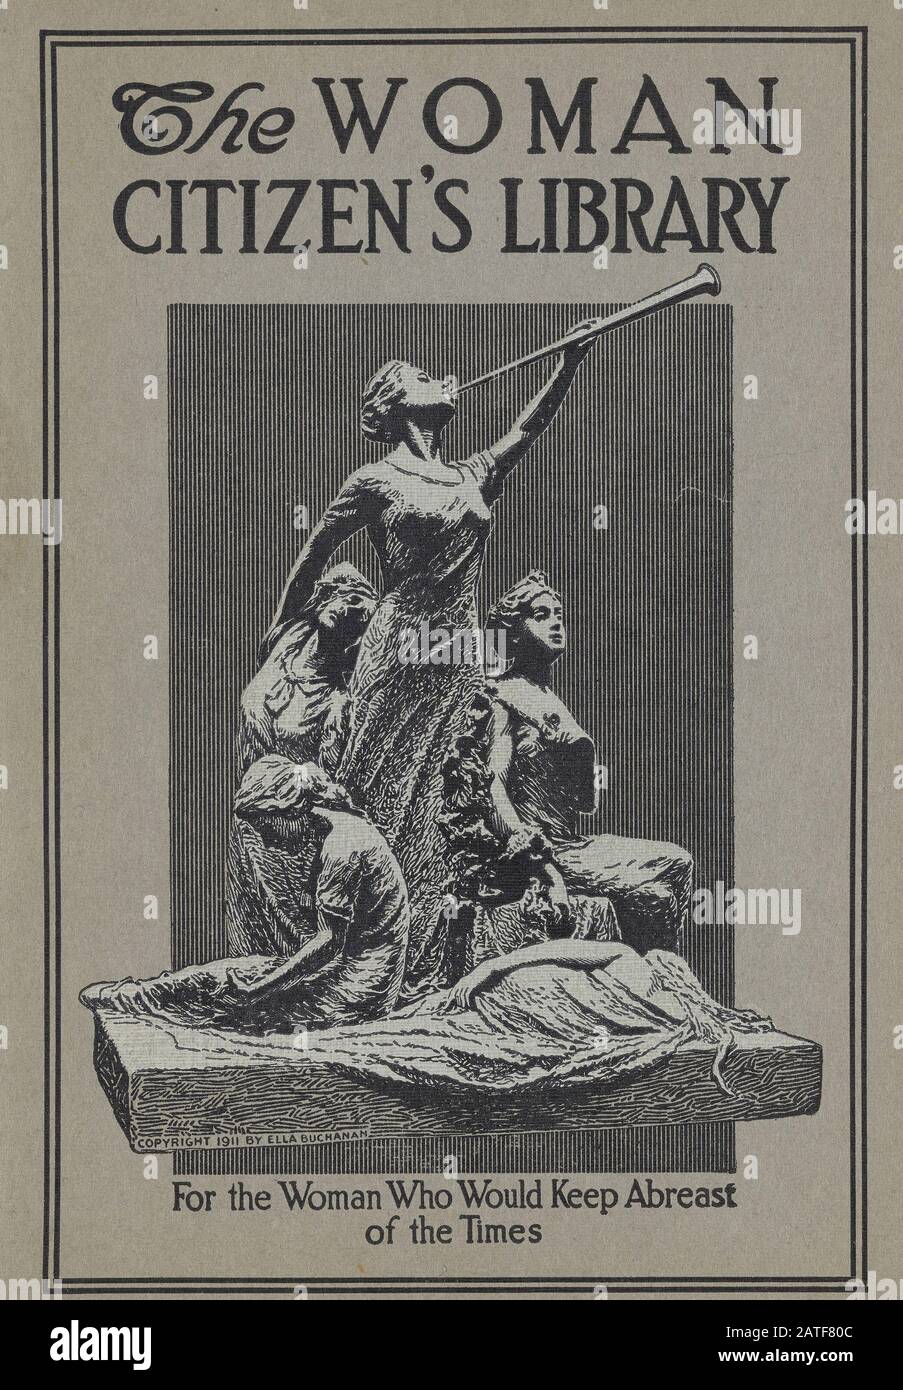 La Biblioteca Ciudadana de la Mujer - sufragio de la Mujer en los Estados Unidos 1840' 1920' Foto de stock